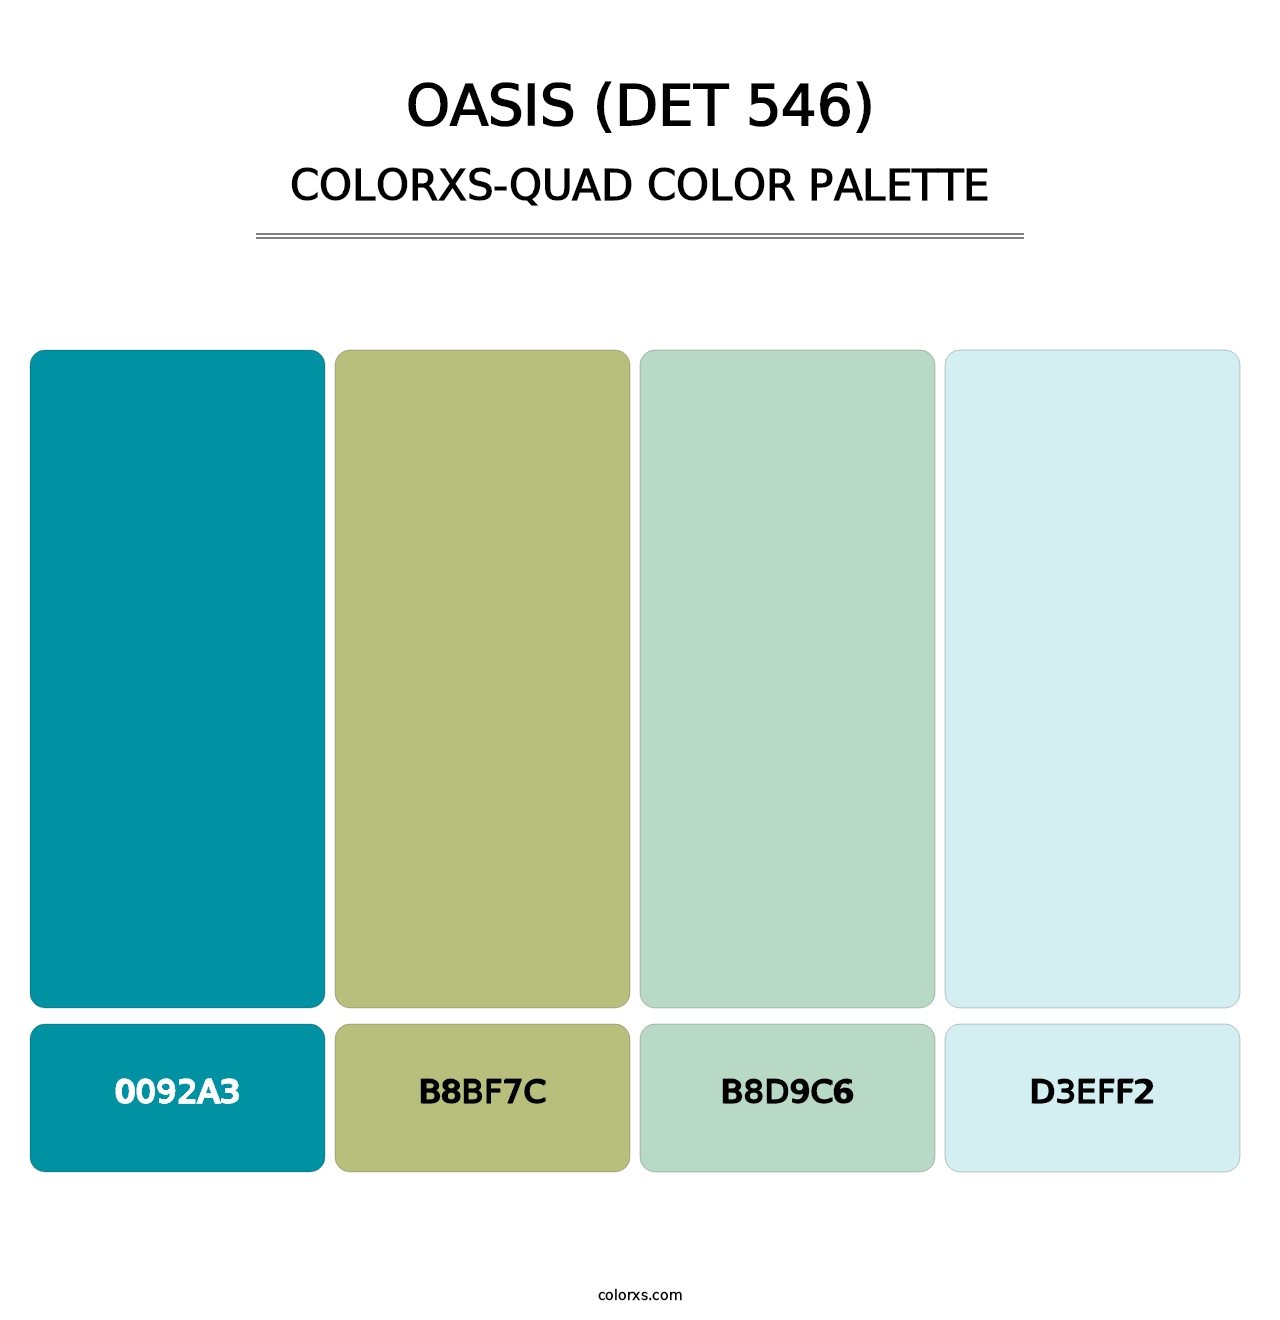 Oasis (DET 546) - Colorxs Quad Palette